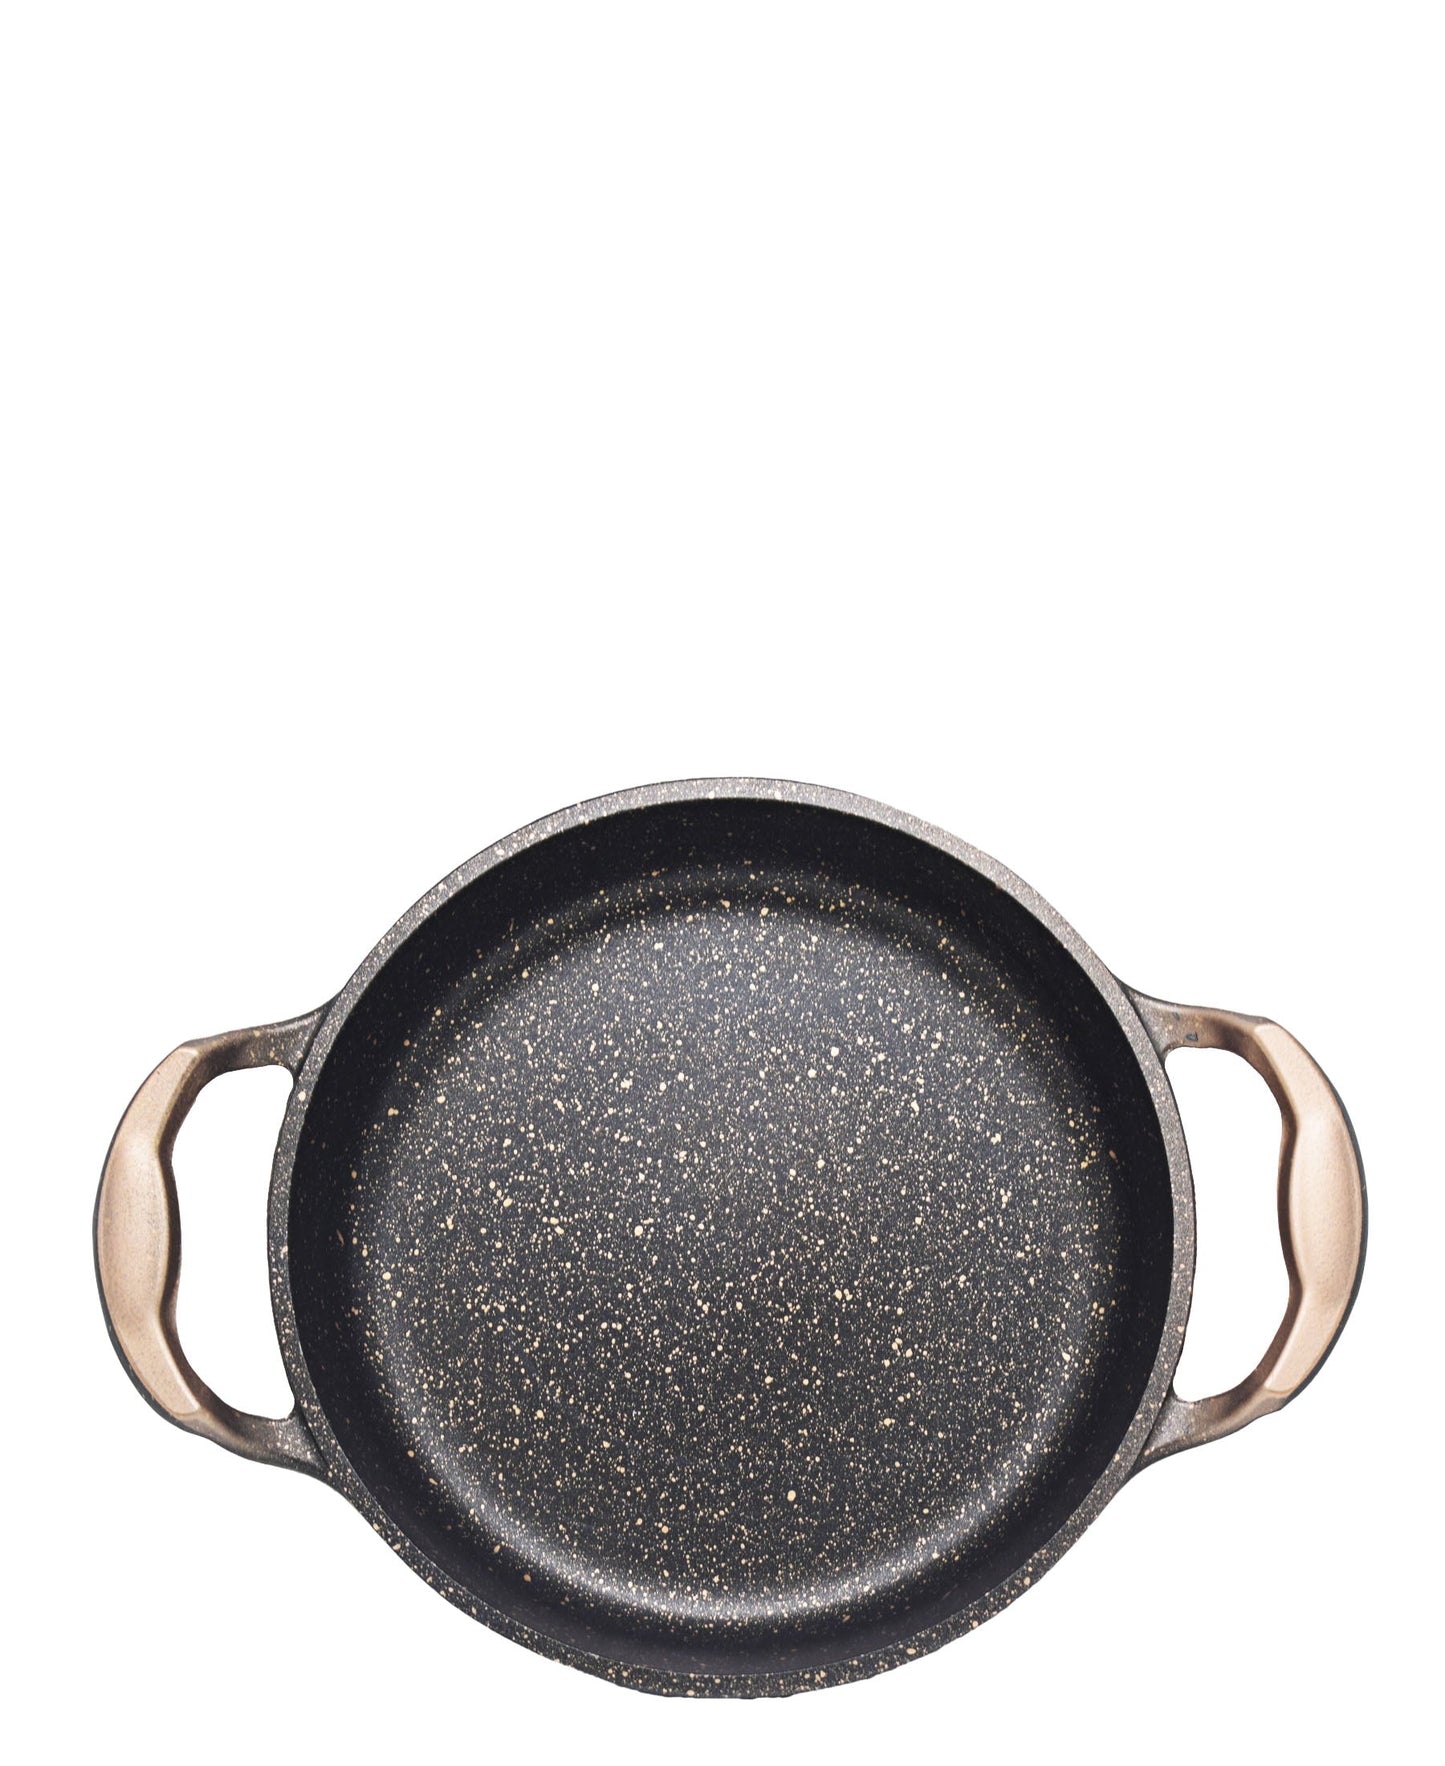 OMS Non Stick 22cm Granite Egg Pan - Copper